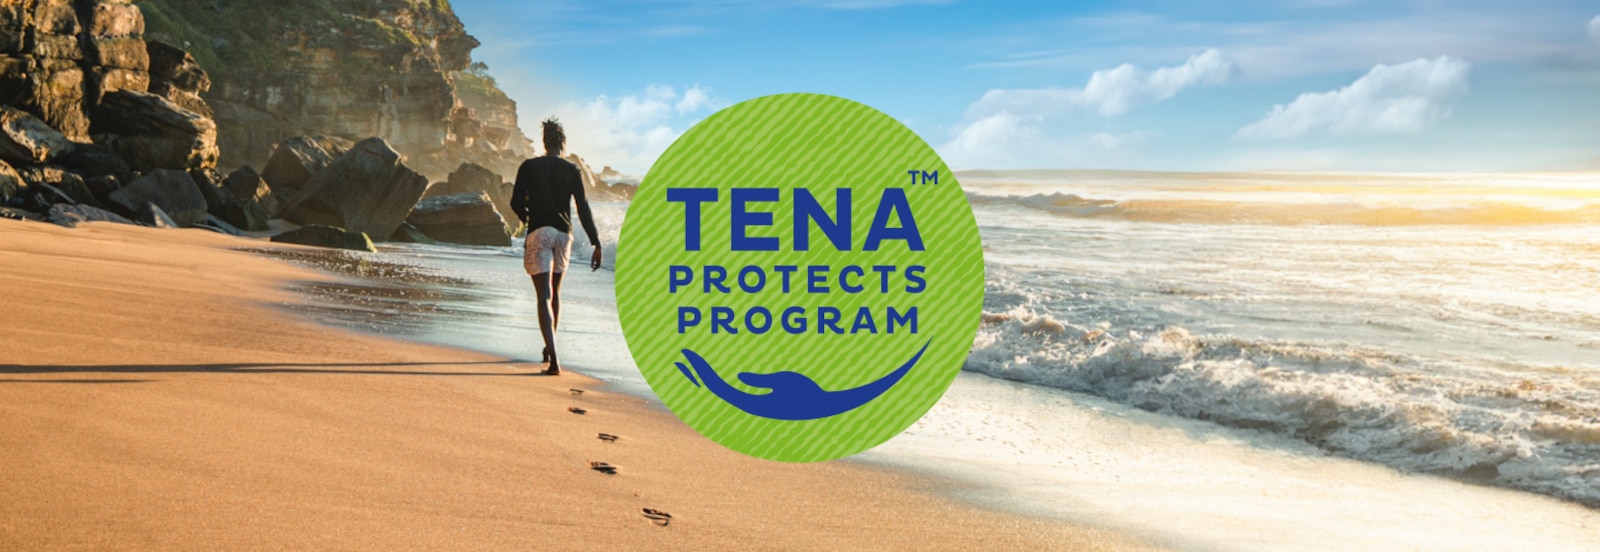 Il logo TENA Protects Program sovrapposto a una foto di un uomo che cammina su una spiaggia soleggiata verso la scogliera lontana